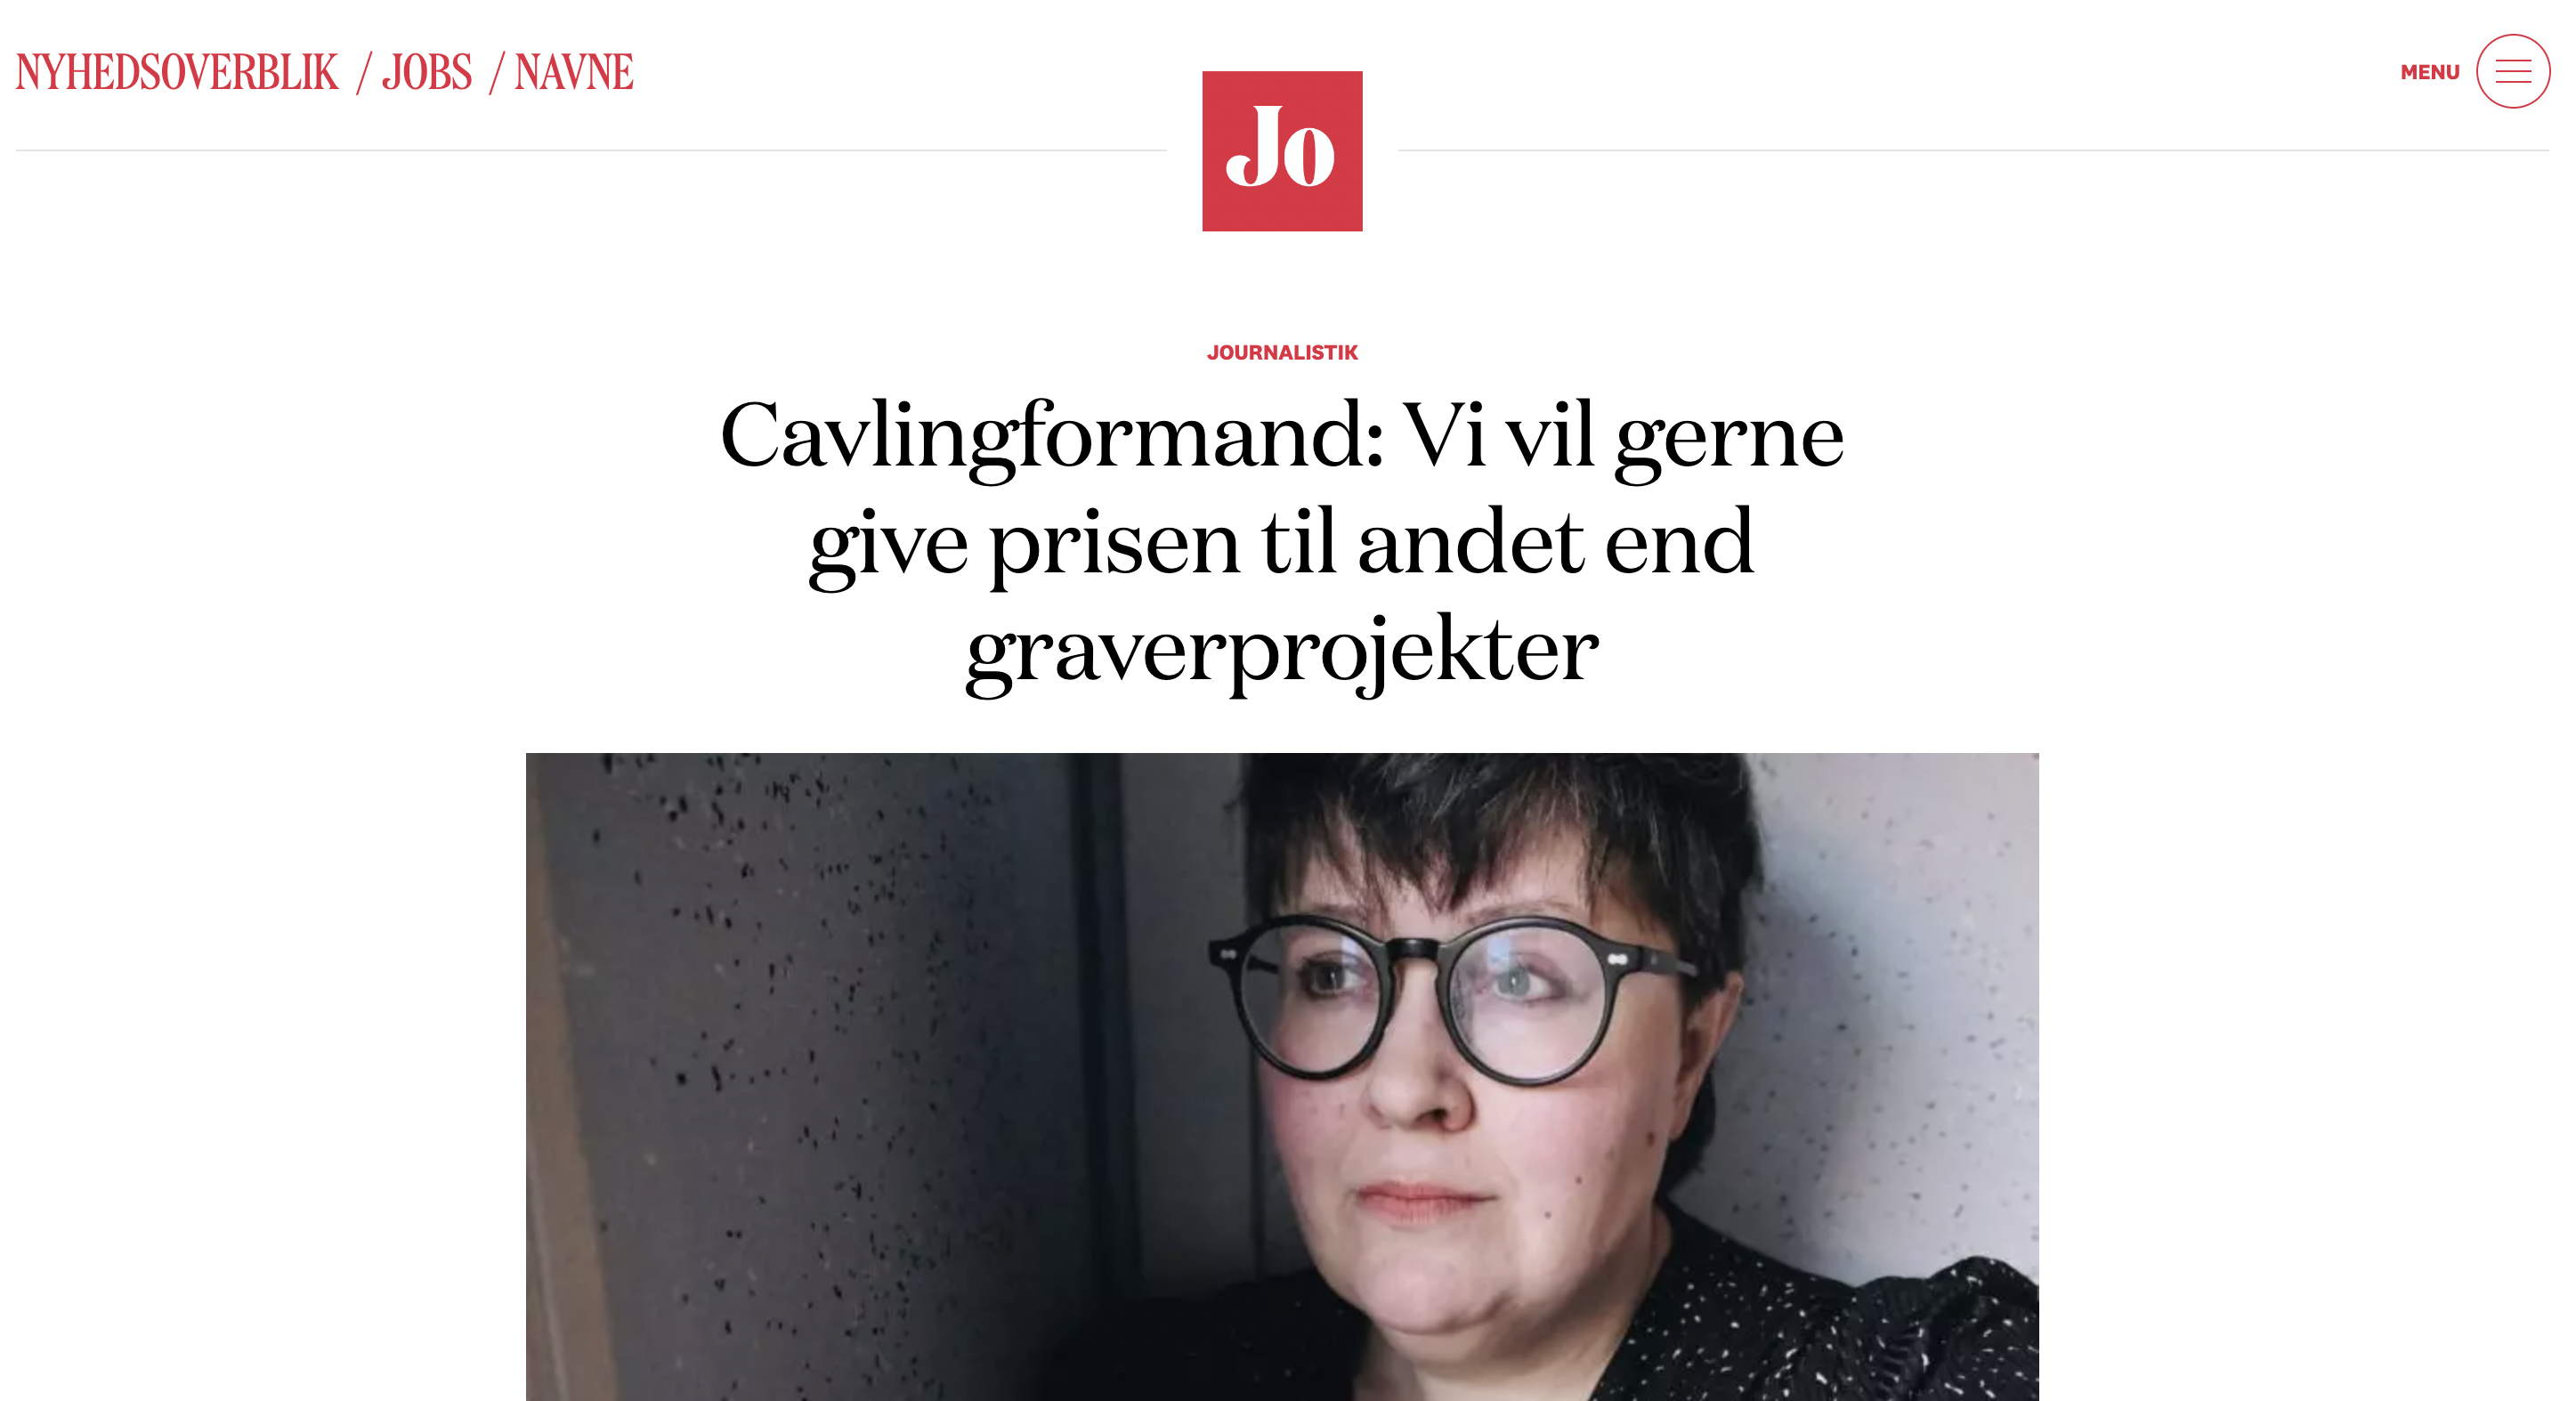 Journalisten.dk